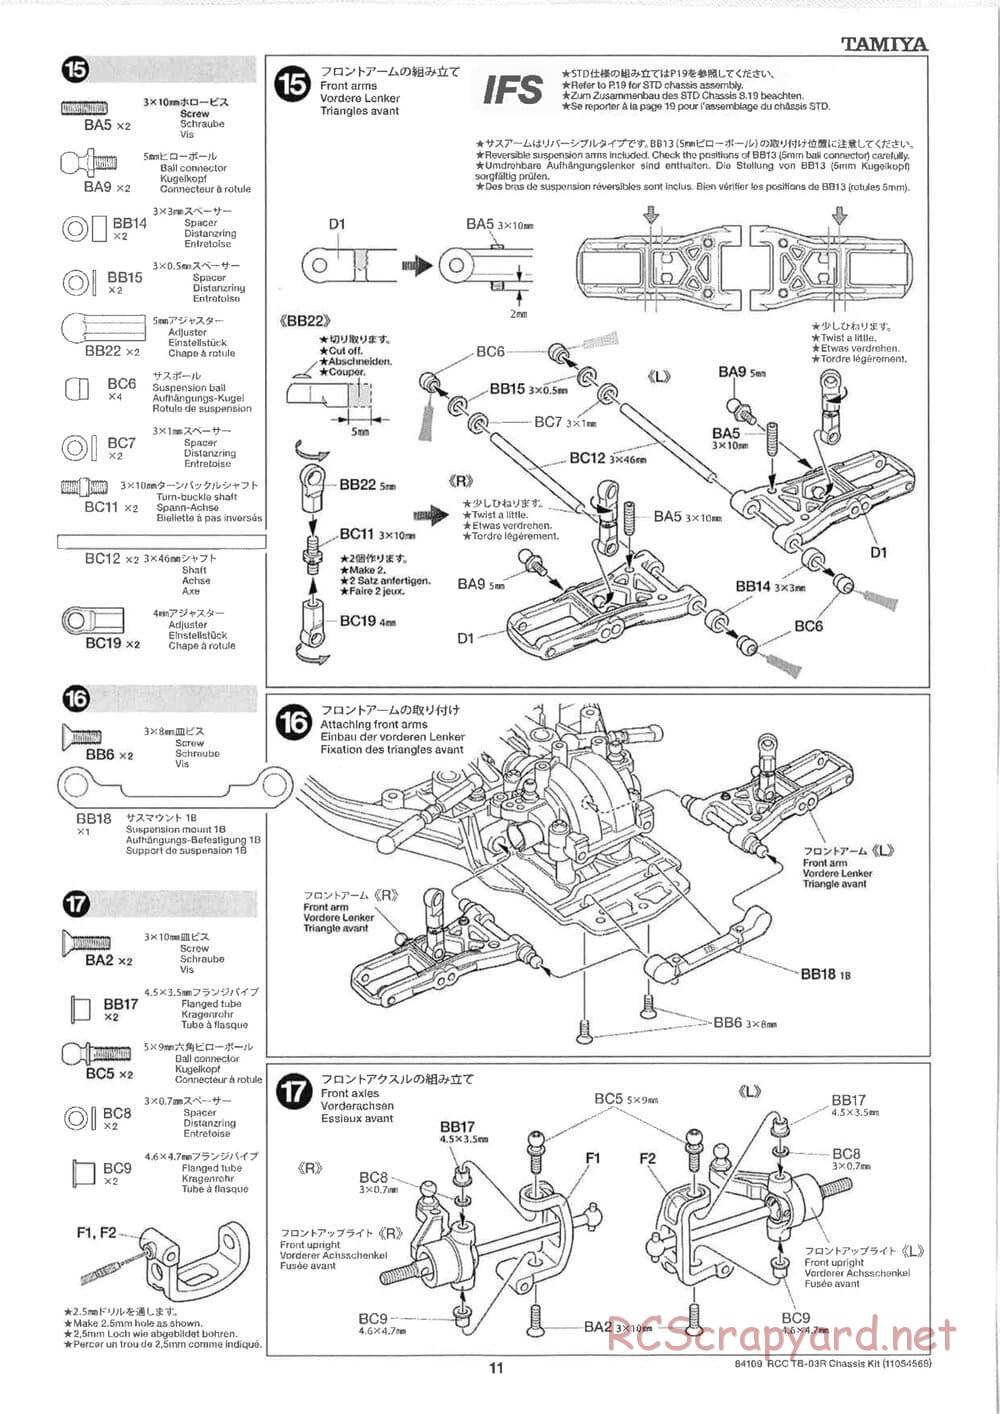 Tamiya - TB-03R Chassis - Manual - Page 11